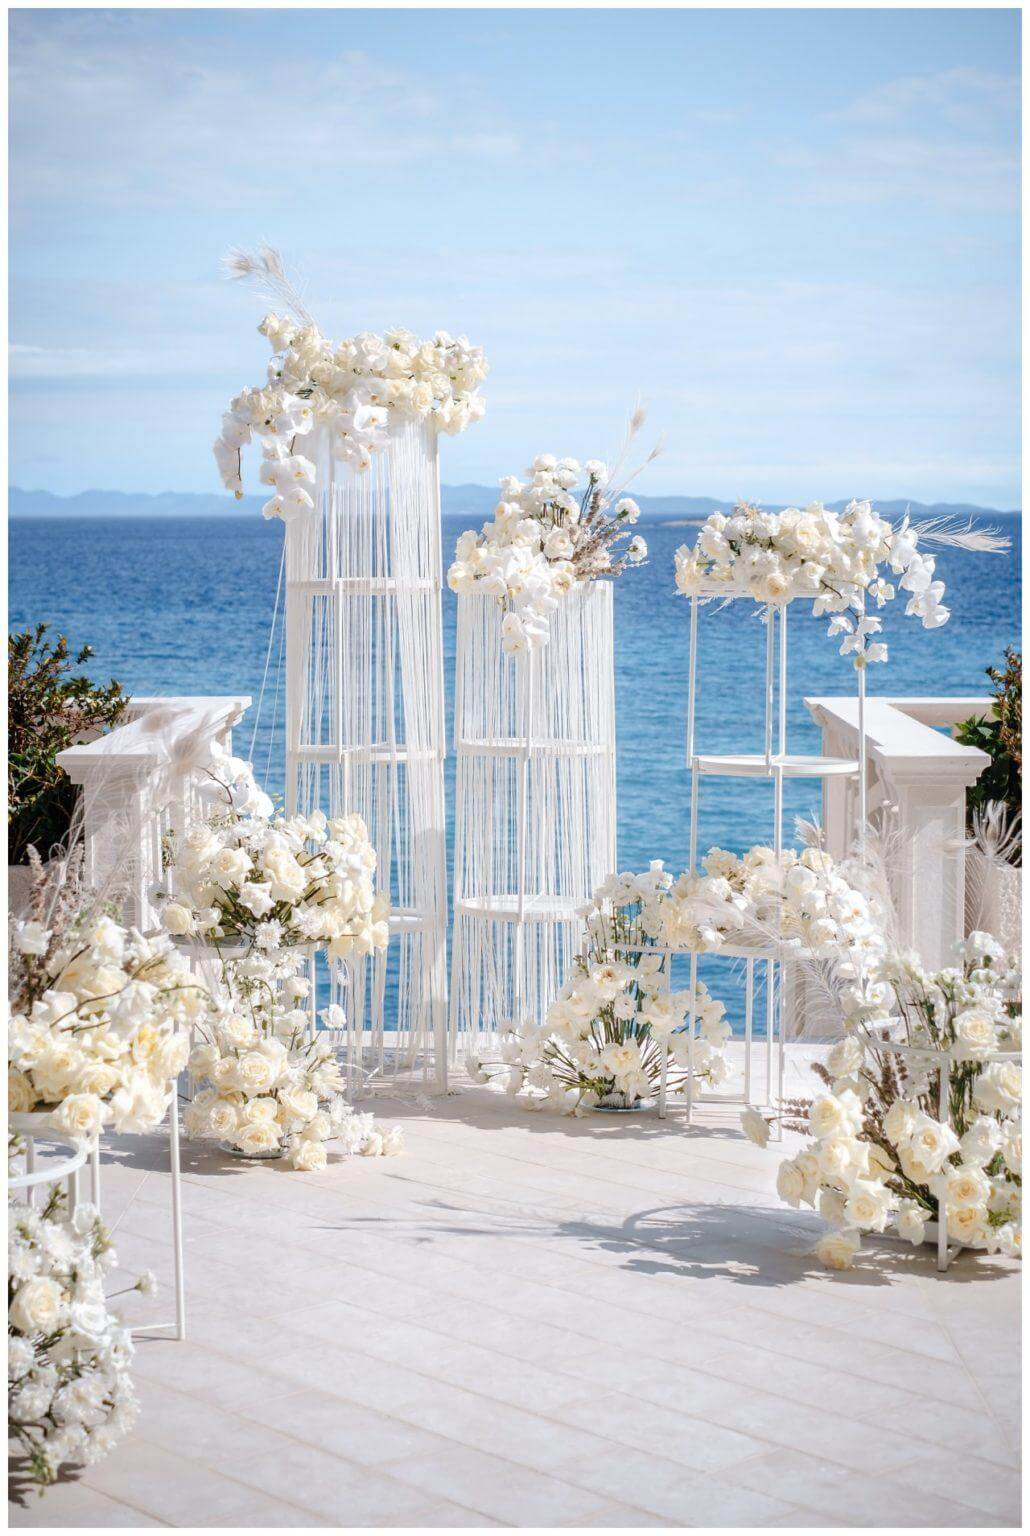 Luxus Hochzeit in weiß Rosen Deko am Meer Wedding Kroatien, wedding in croatia,hochzeitsplanerin kroatien, hochzeit in kroatien